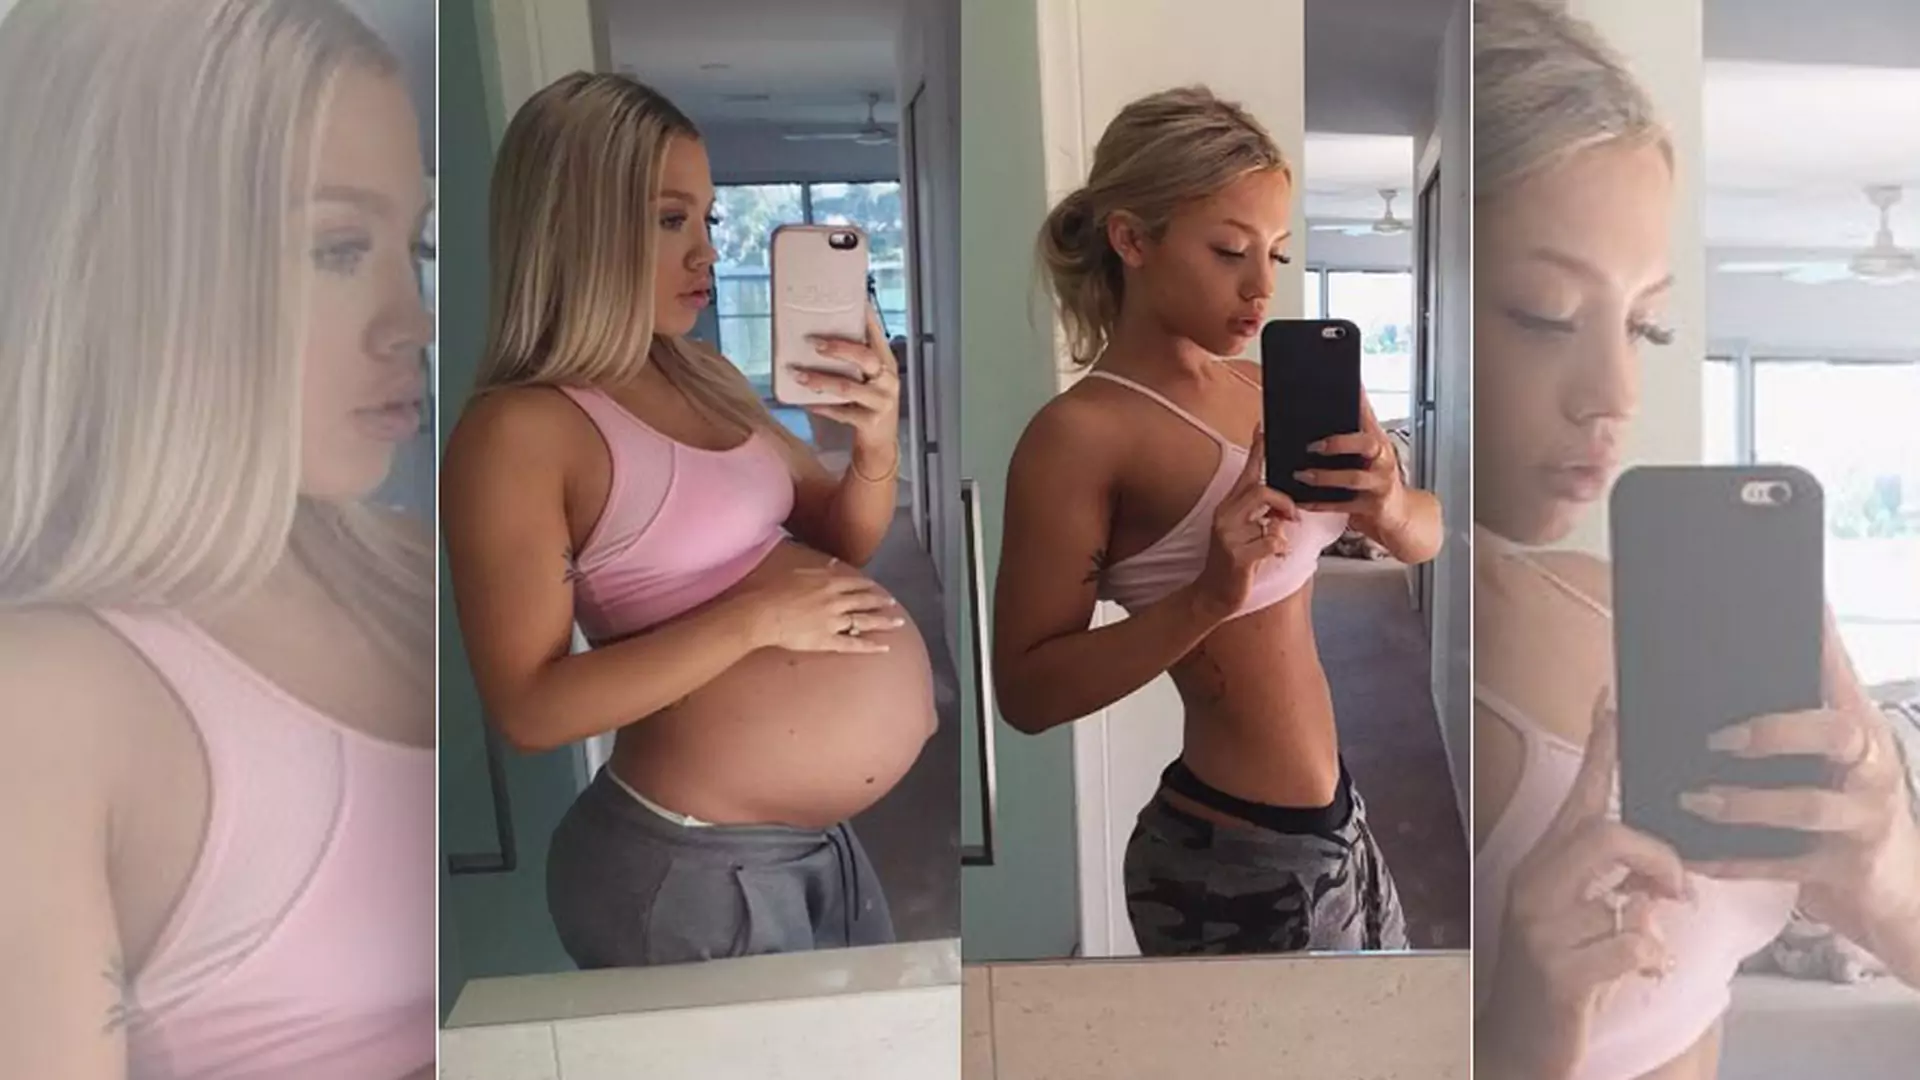 Brzuch 2 miesiące po porodzie: zdjęcia blogerki fitness wywołują dyskusję w sieci